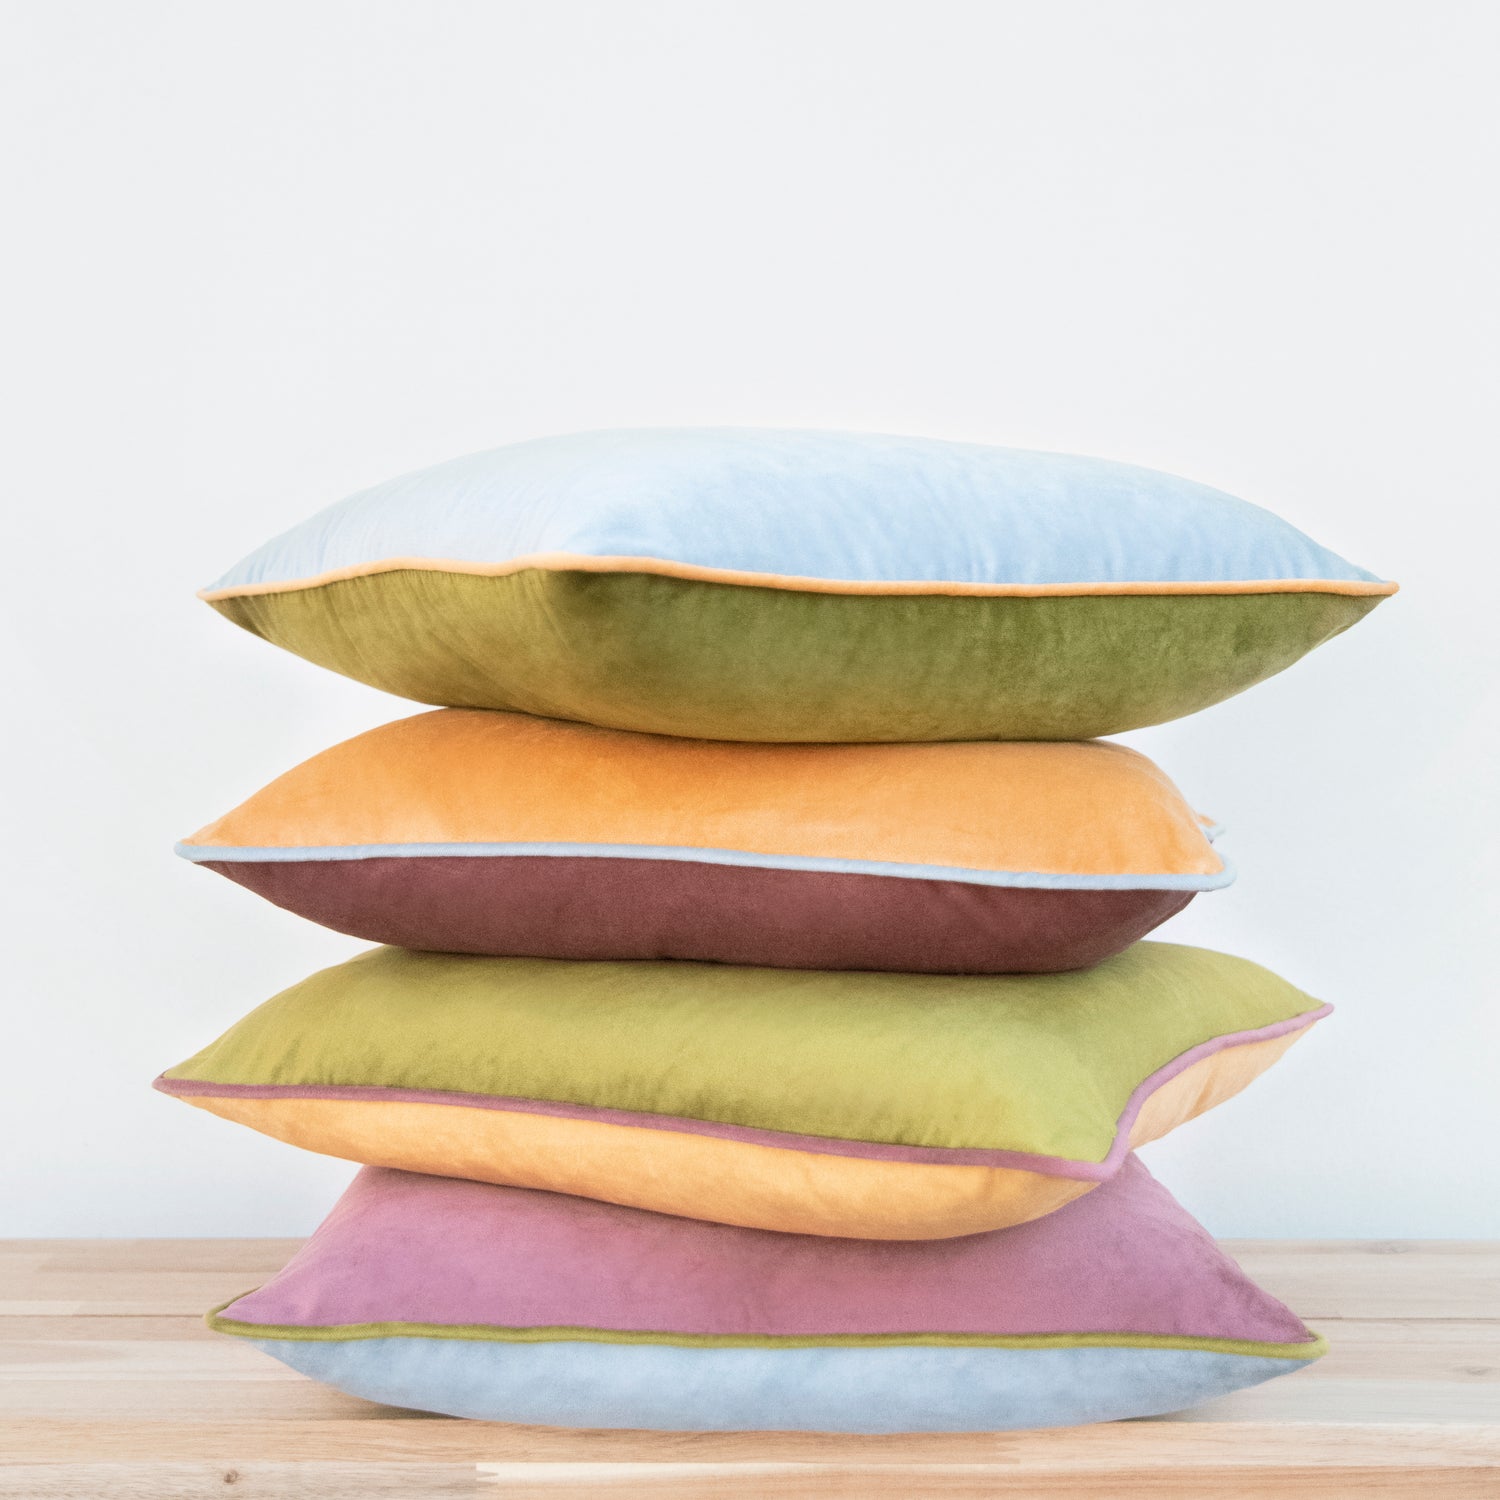 Monteverde Pillows (4-Pack) - Pink/Blue